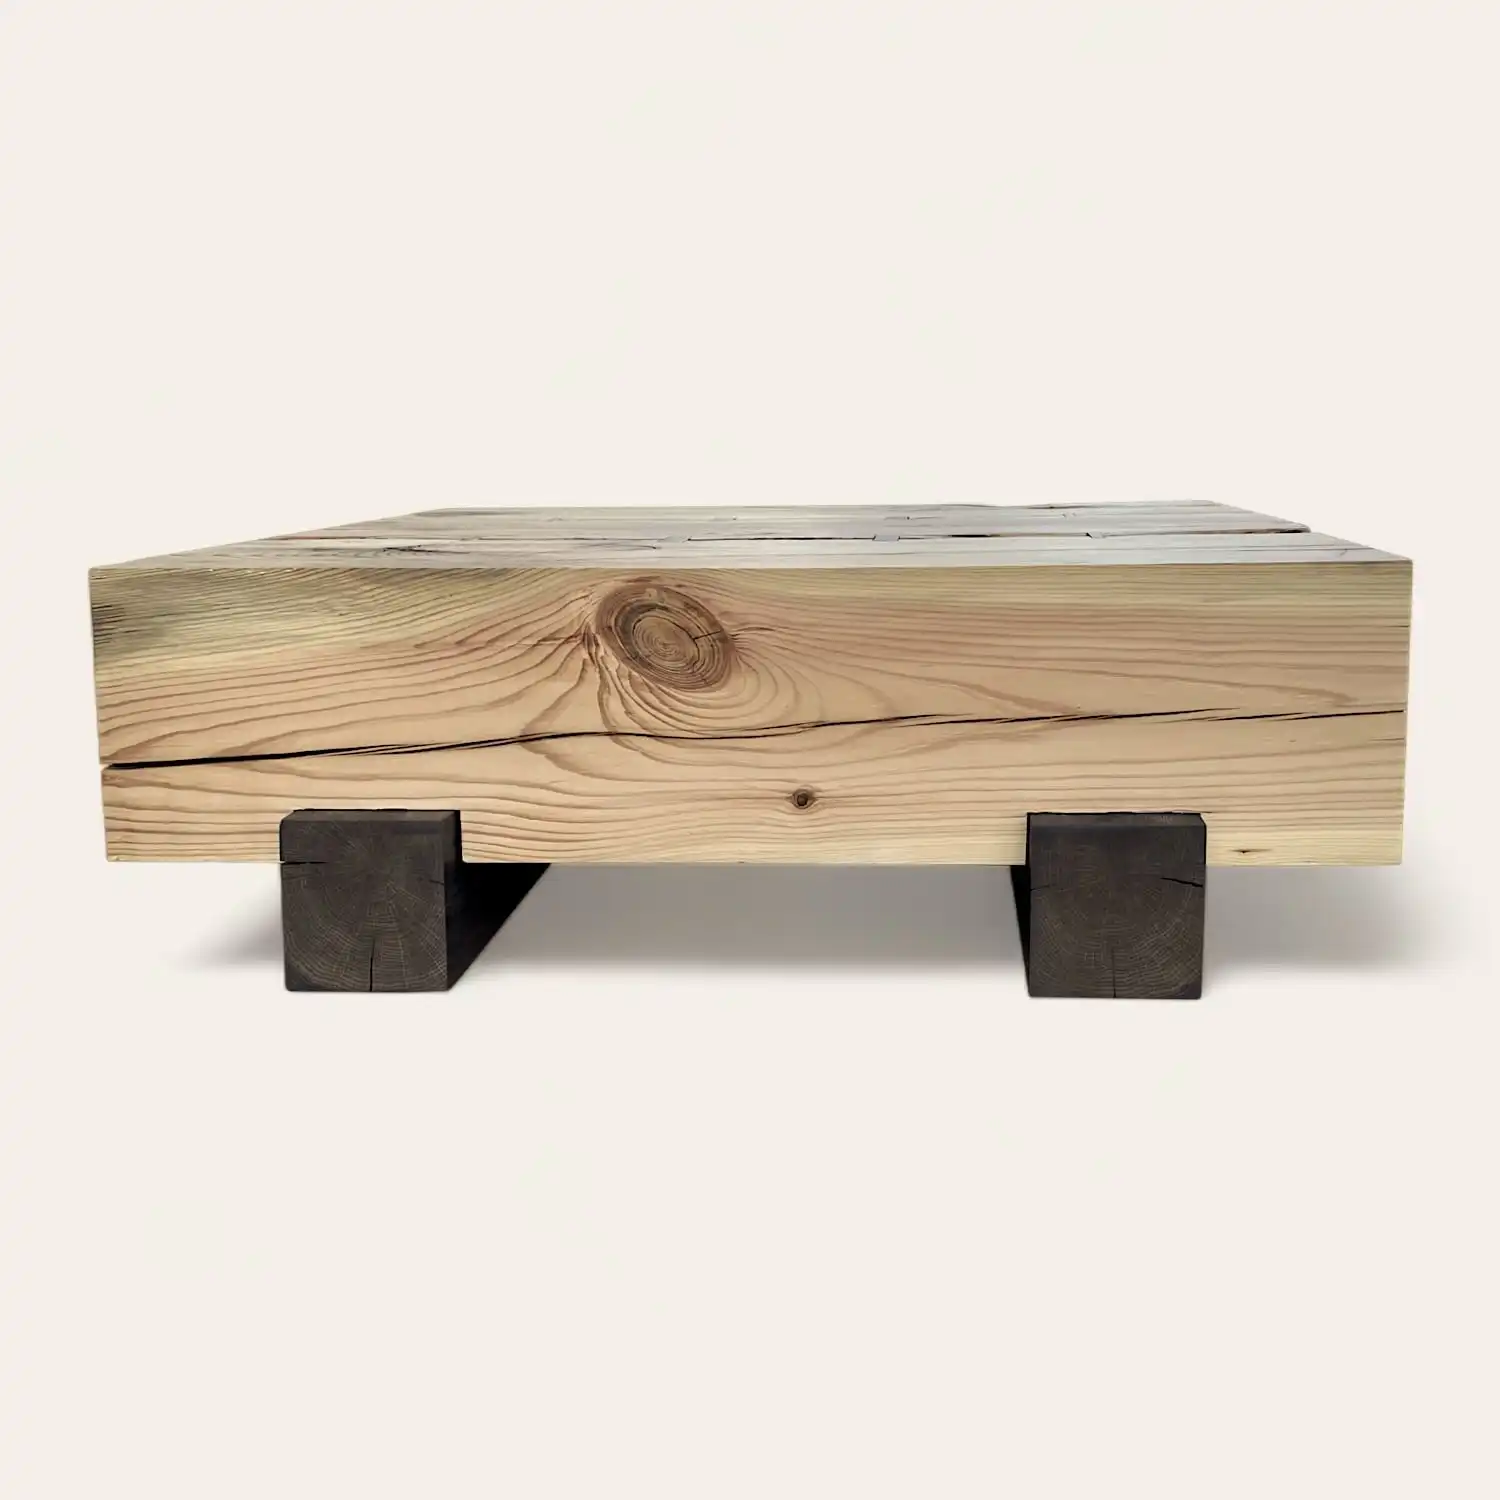  Une table basse en bois ancien avec pieds en métal. 